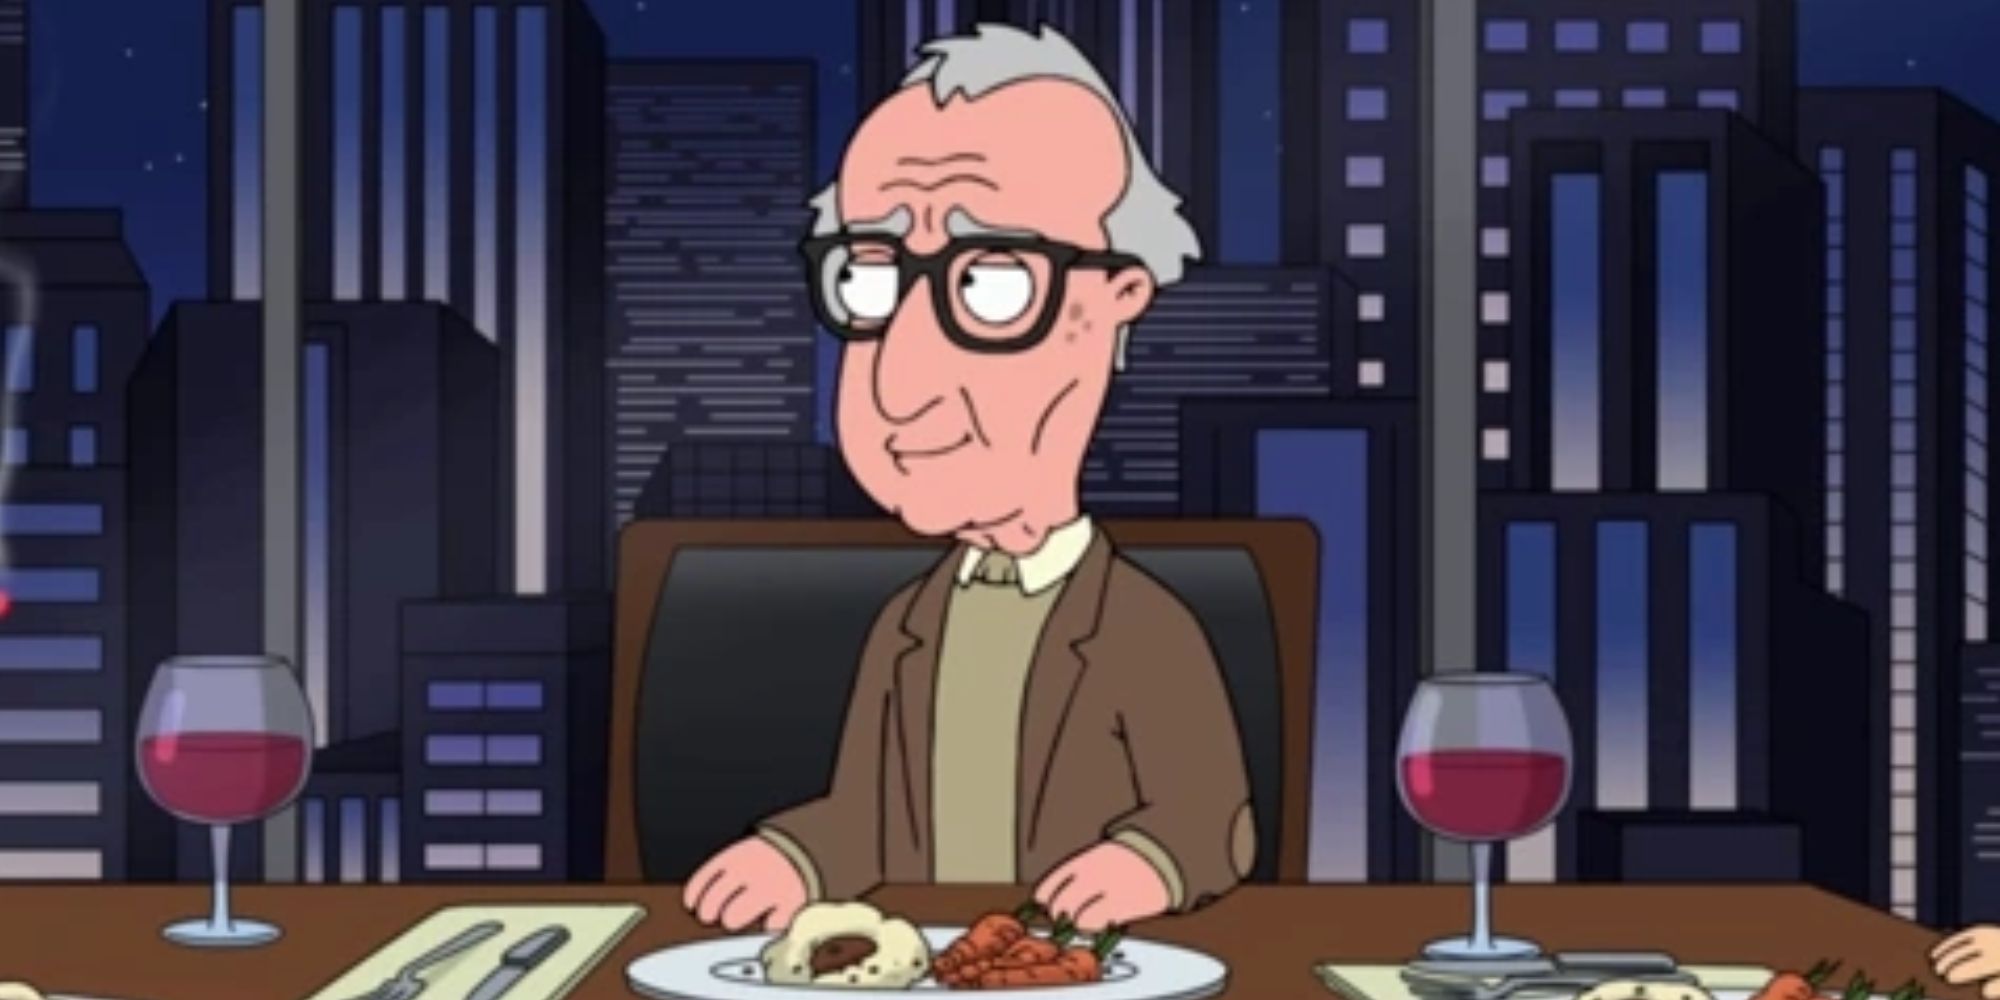 Woody Allen in Family Guy eating dinner